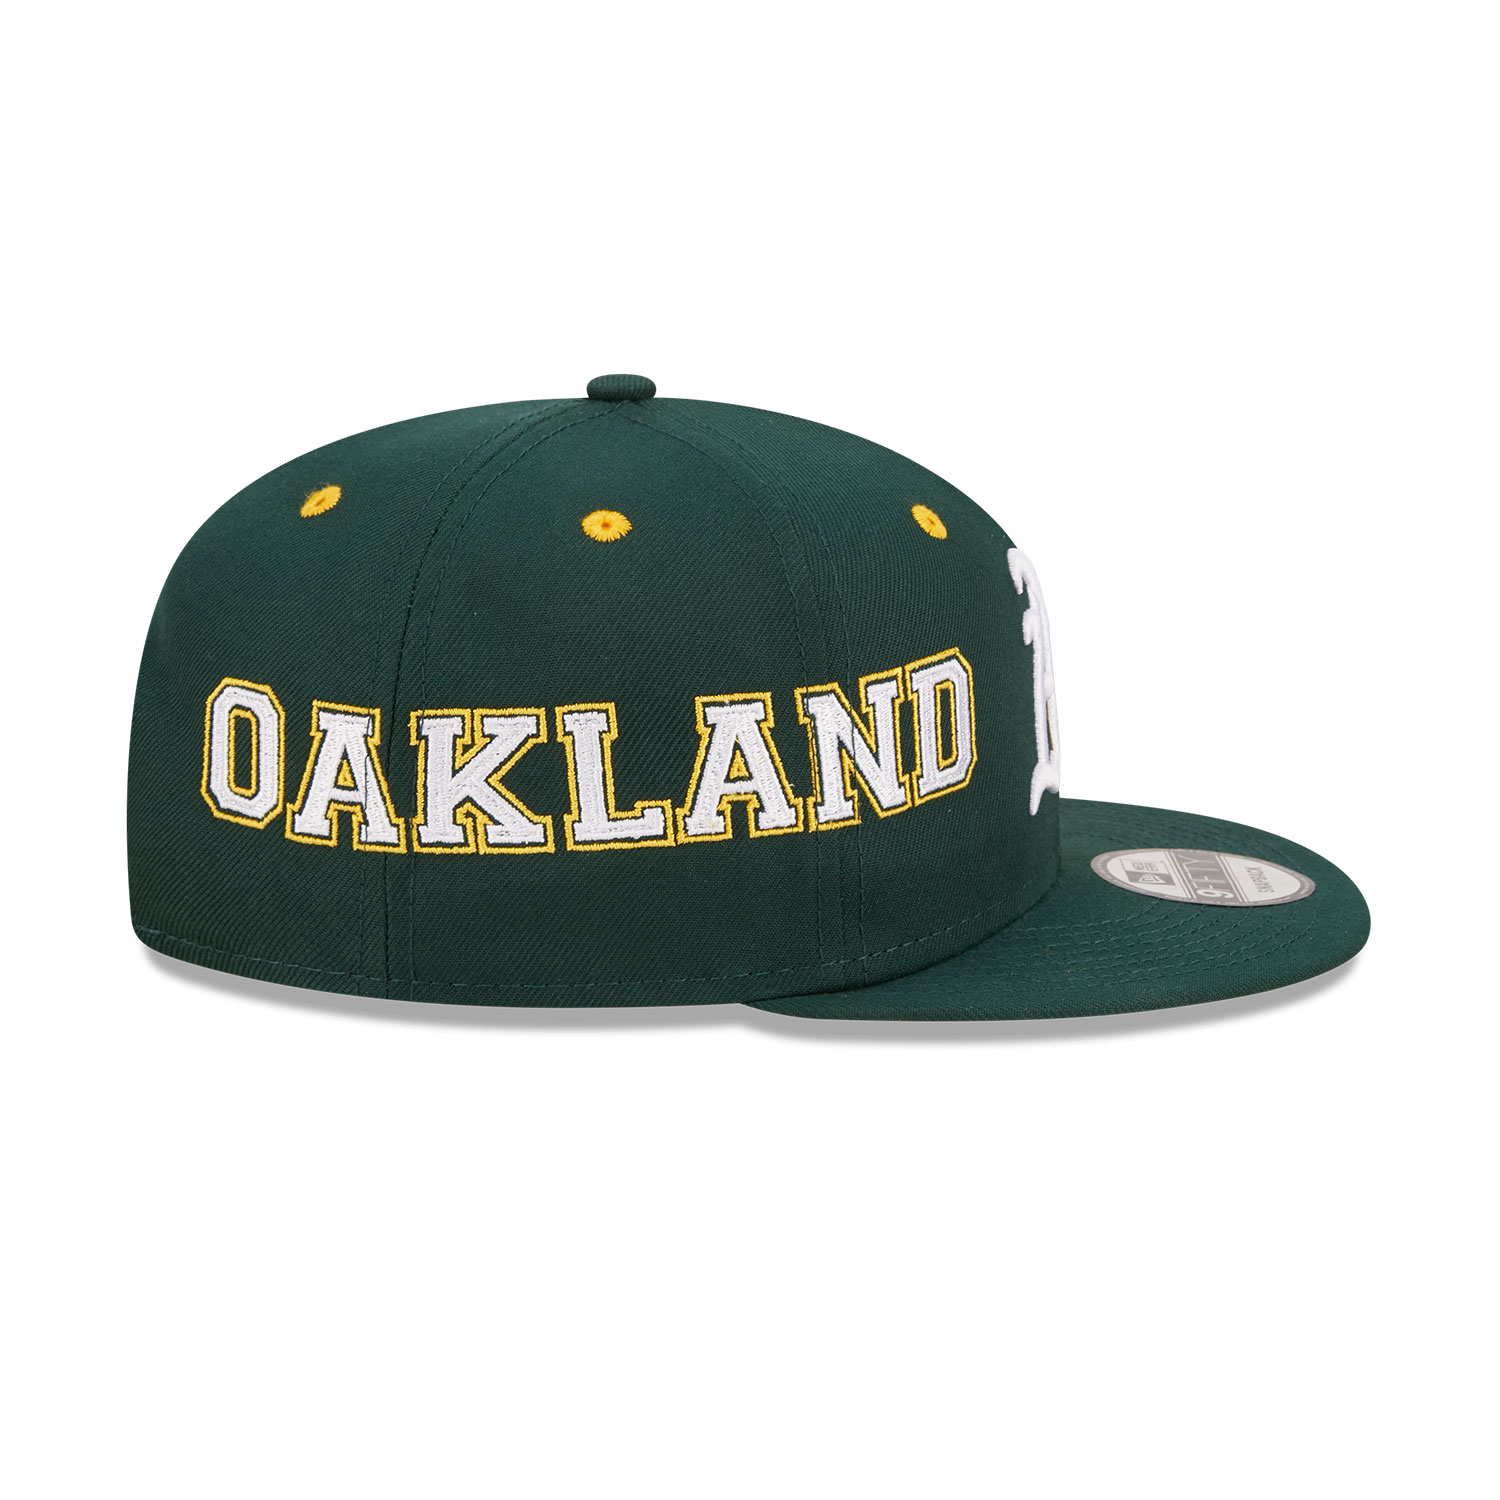 【Msize】MLBxNEW ERAxWDS Oakland Athletics